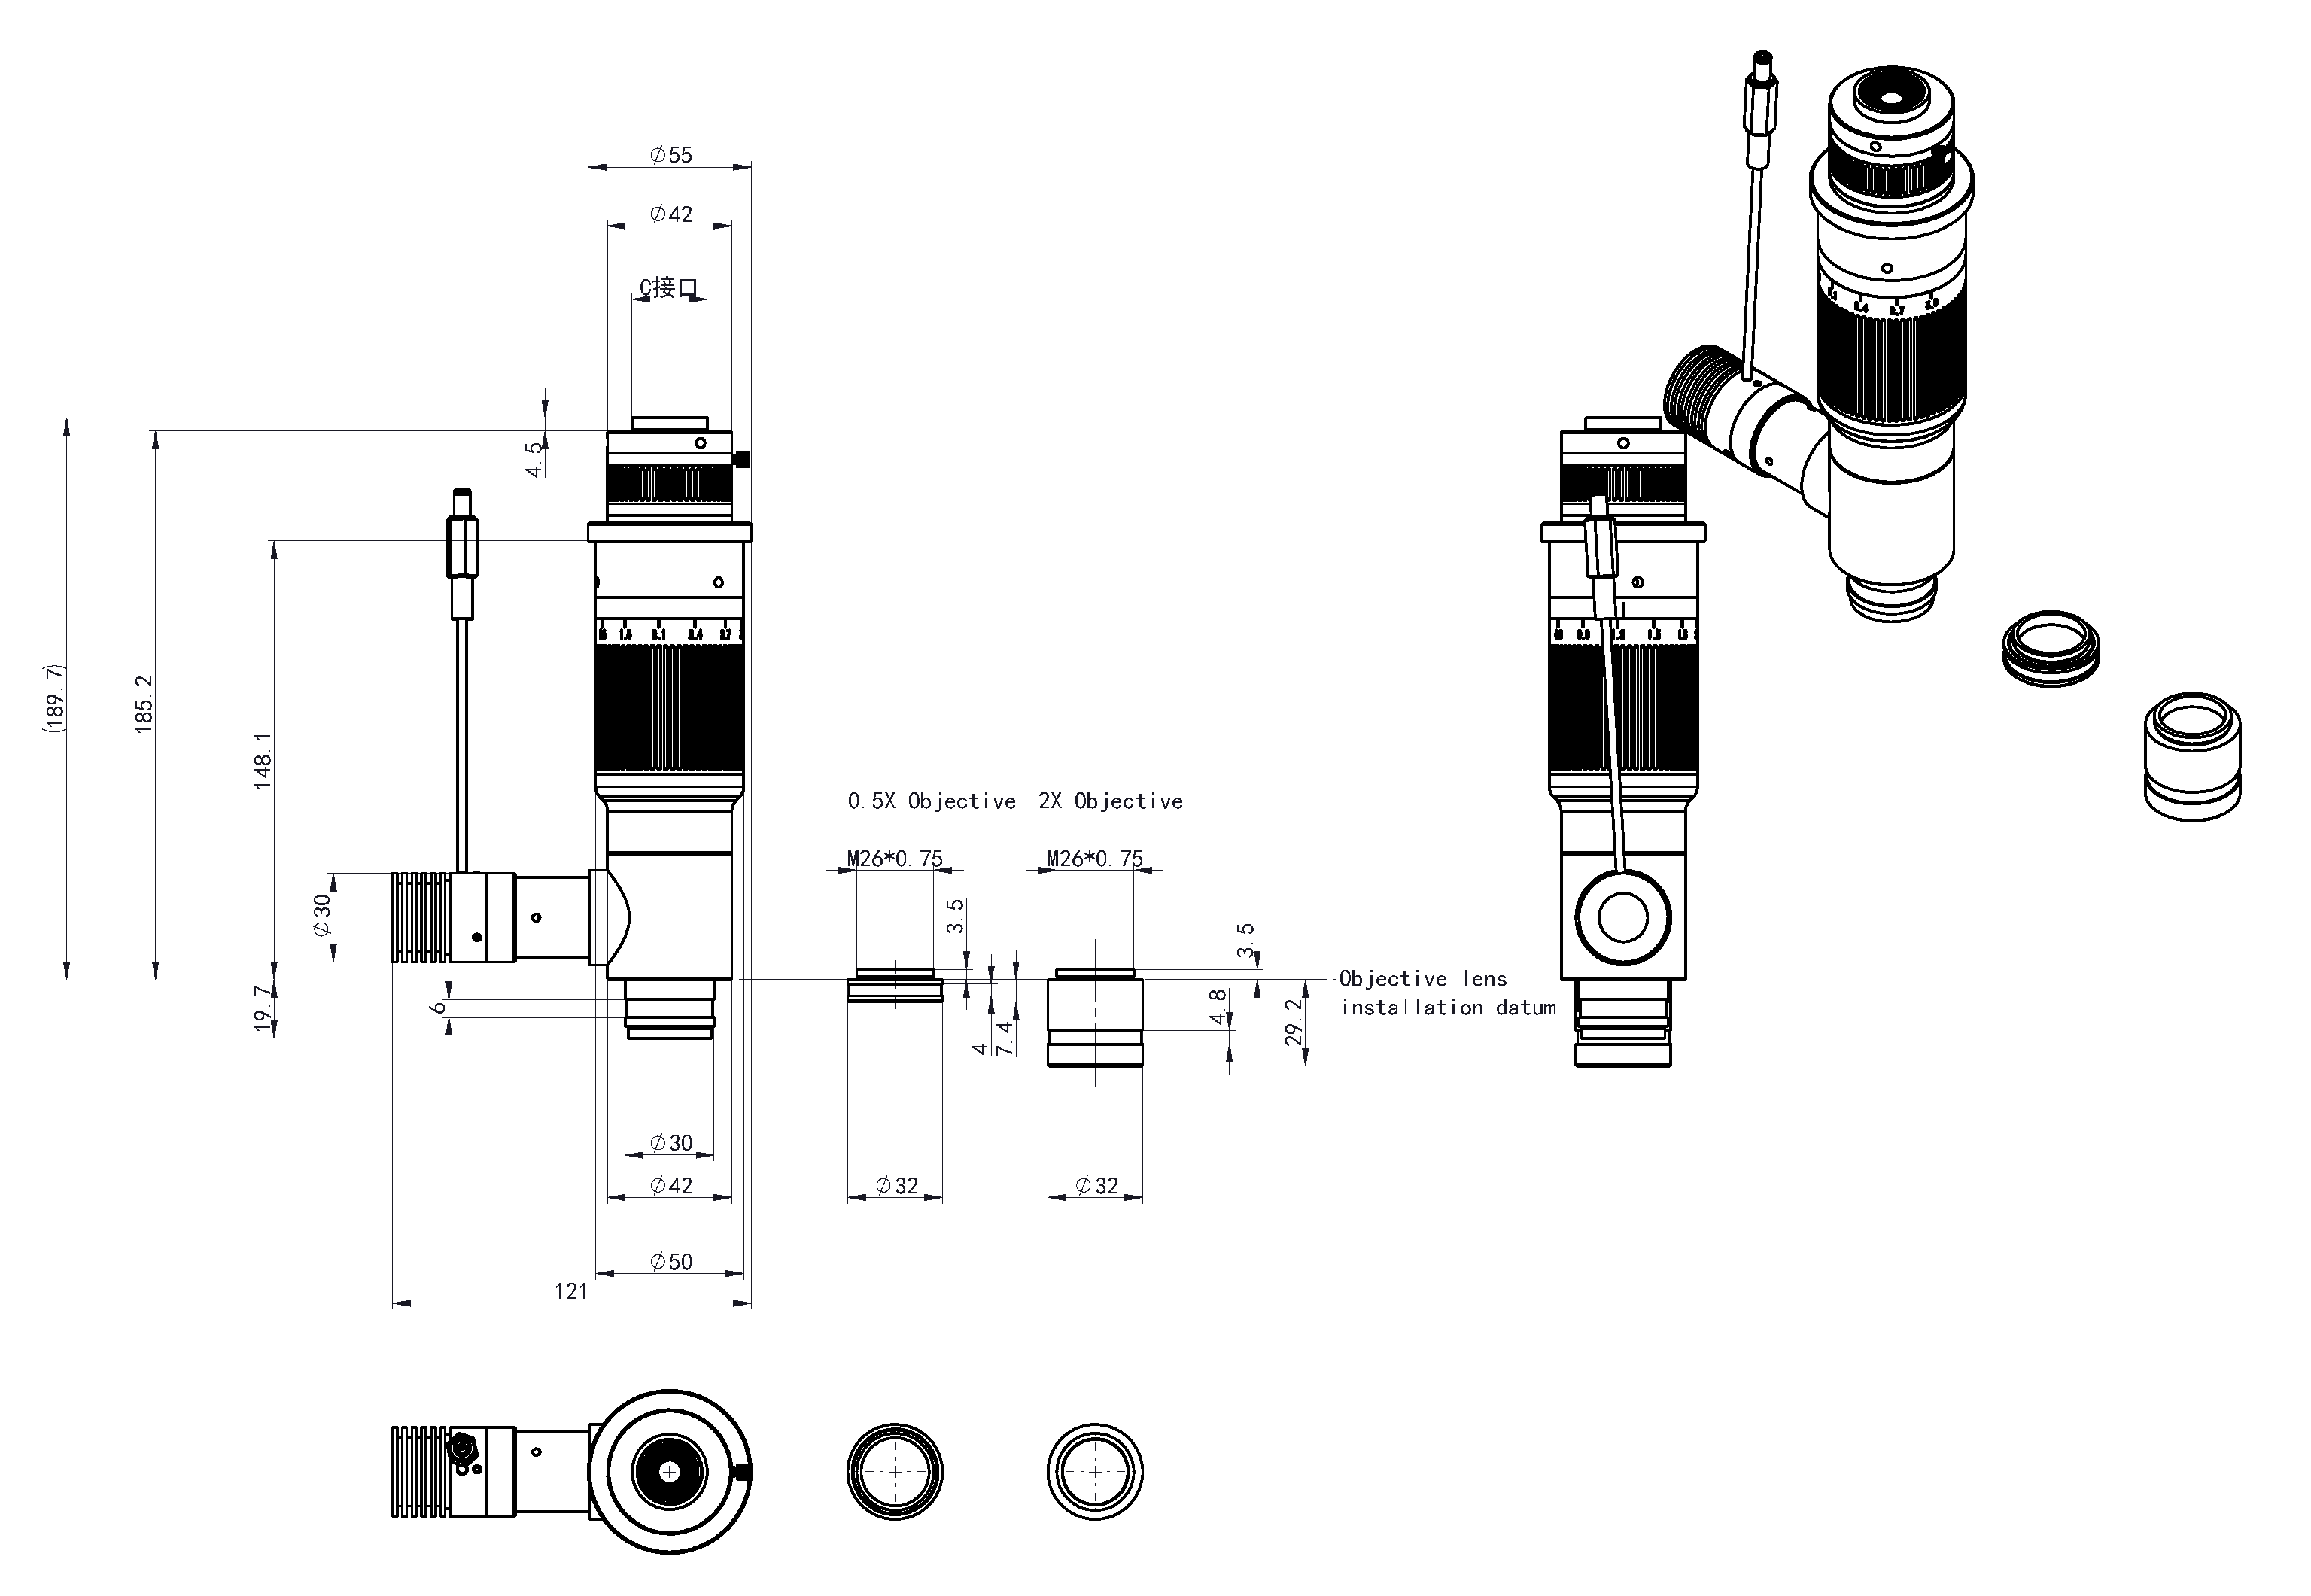 BS-1085A 1X C-монтаждық адаптері және түзу типті коаксиалды сəулелендіру құралы Өлшемі